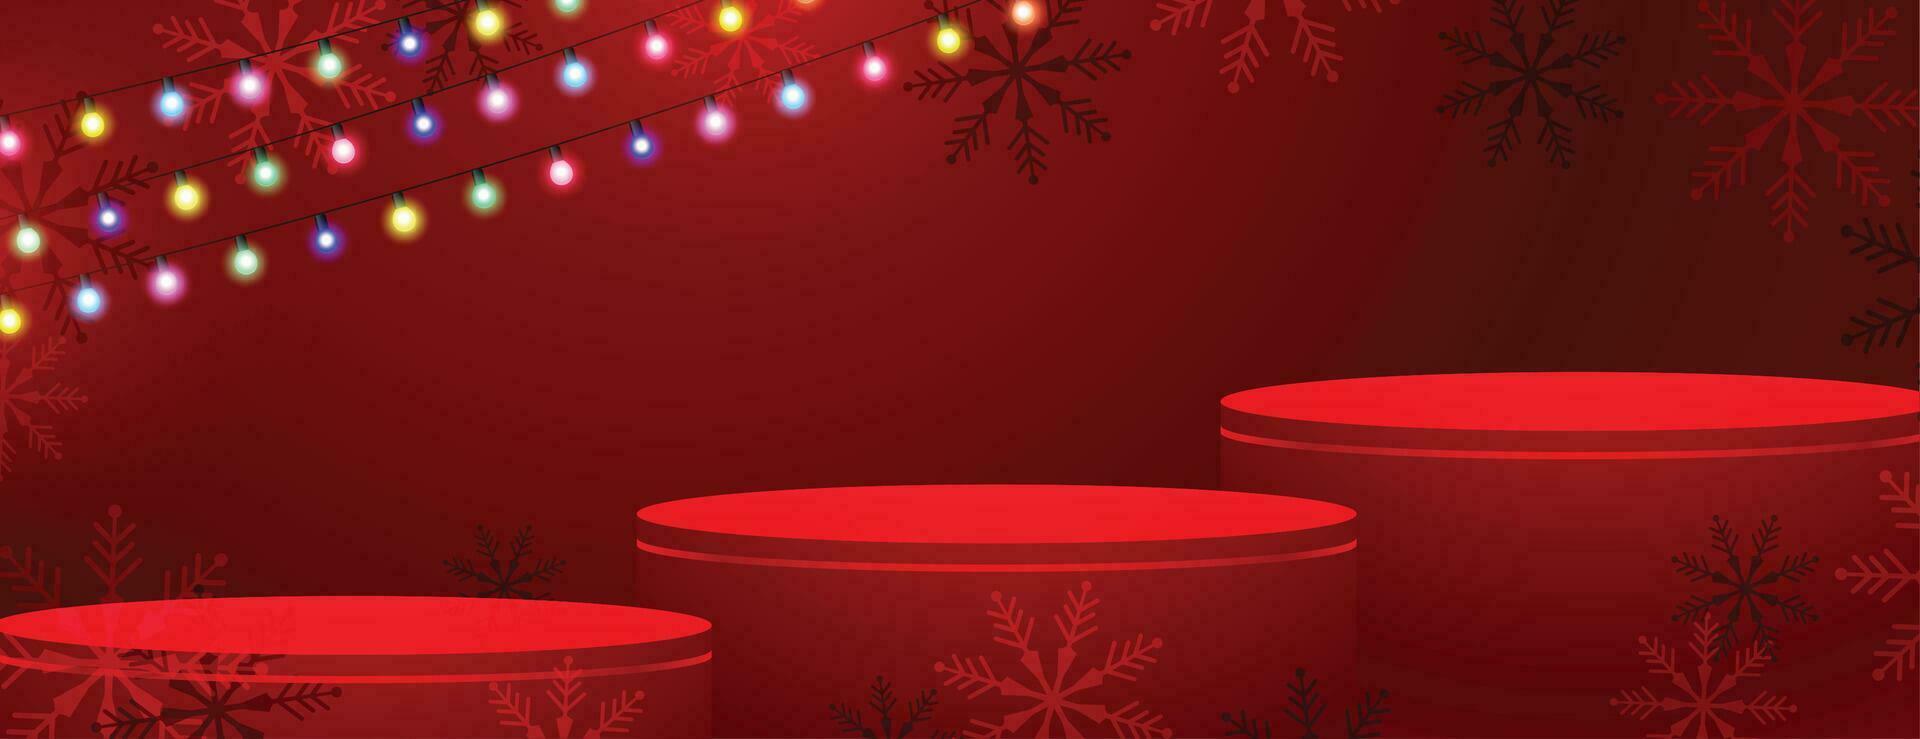 3d podium platform Aan vrolijk Kerstmis rood banier met licht draad vector